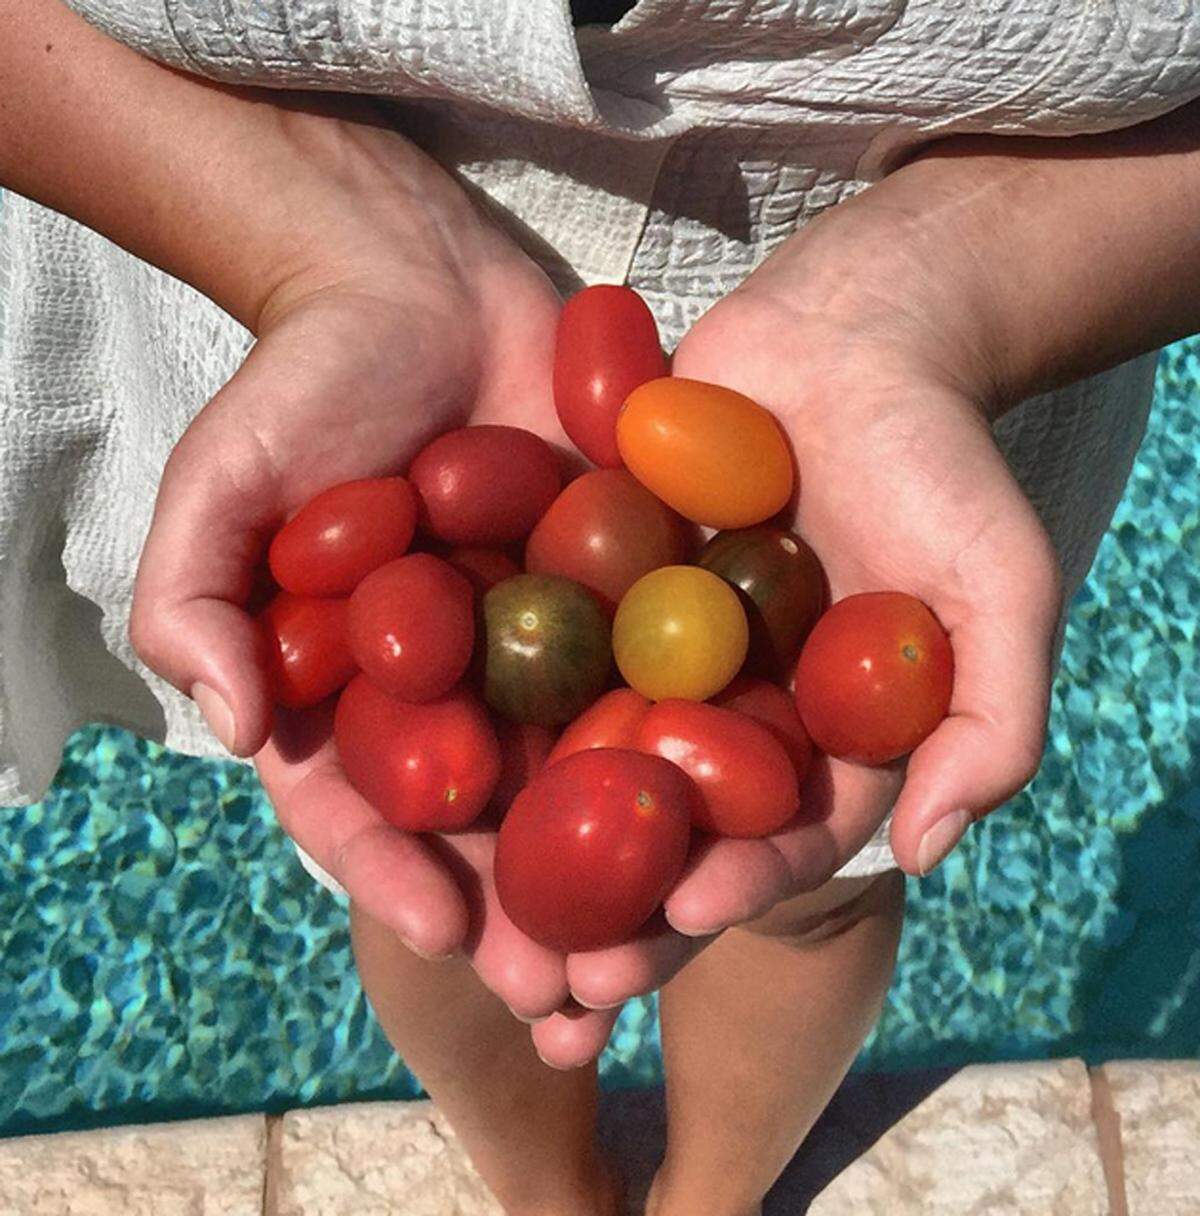 Die roten Früchte enthalten ein Antioxidant namens Lycopin, das die Außenhaut der Tomaten von dem Sonnenlicht schützt. Wer den Sommer nicht ohne Sonnenschäden übersteht, sollte deshalb häufig Tomaten essen. Am besten wirkt die Aufnahme übrigens, wenn man zu Tomatensaft oder Suppe greift. 